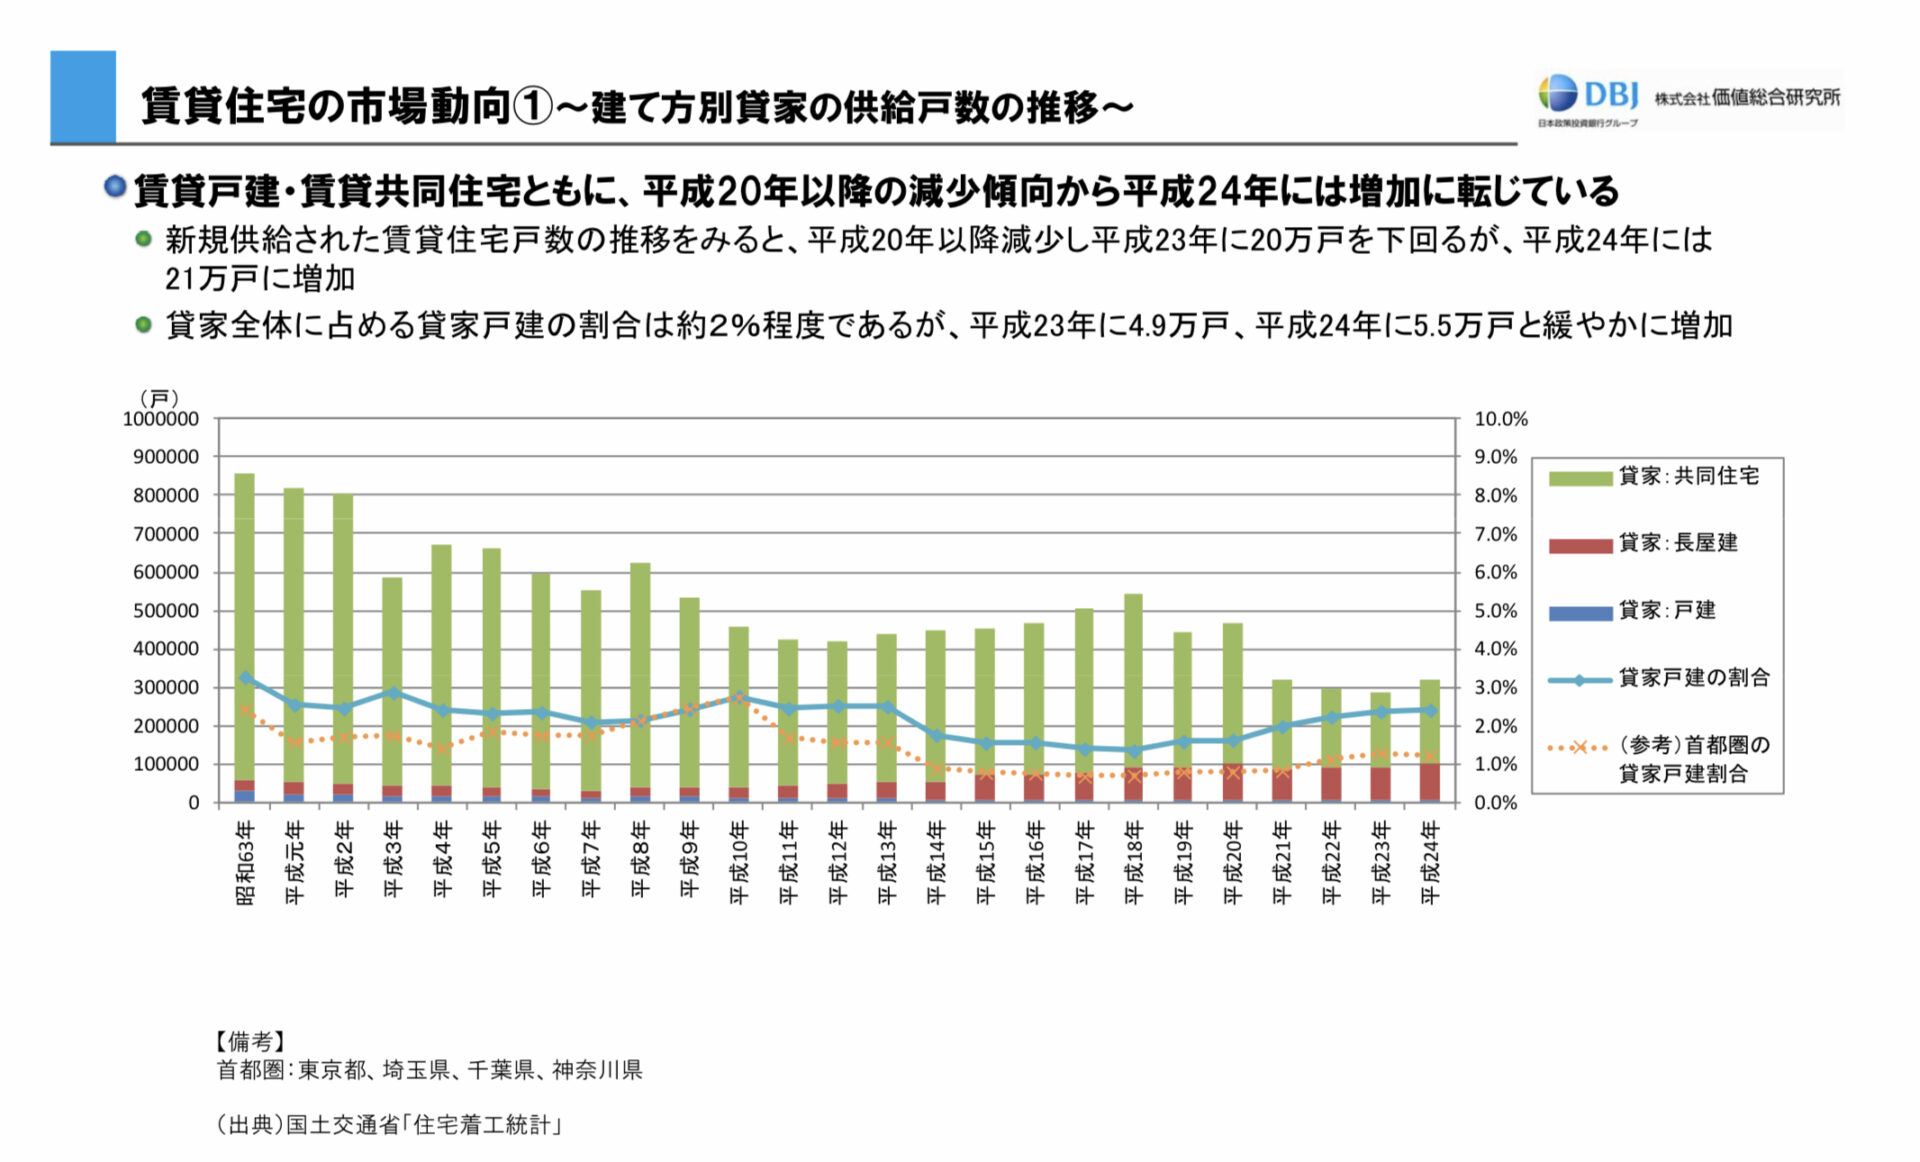 戸建賃貸供給量データ（関東）